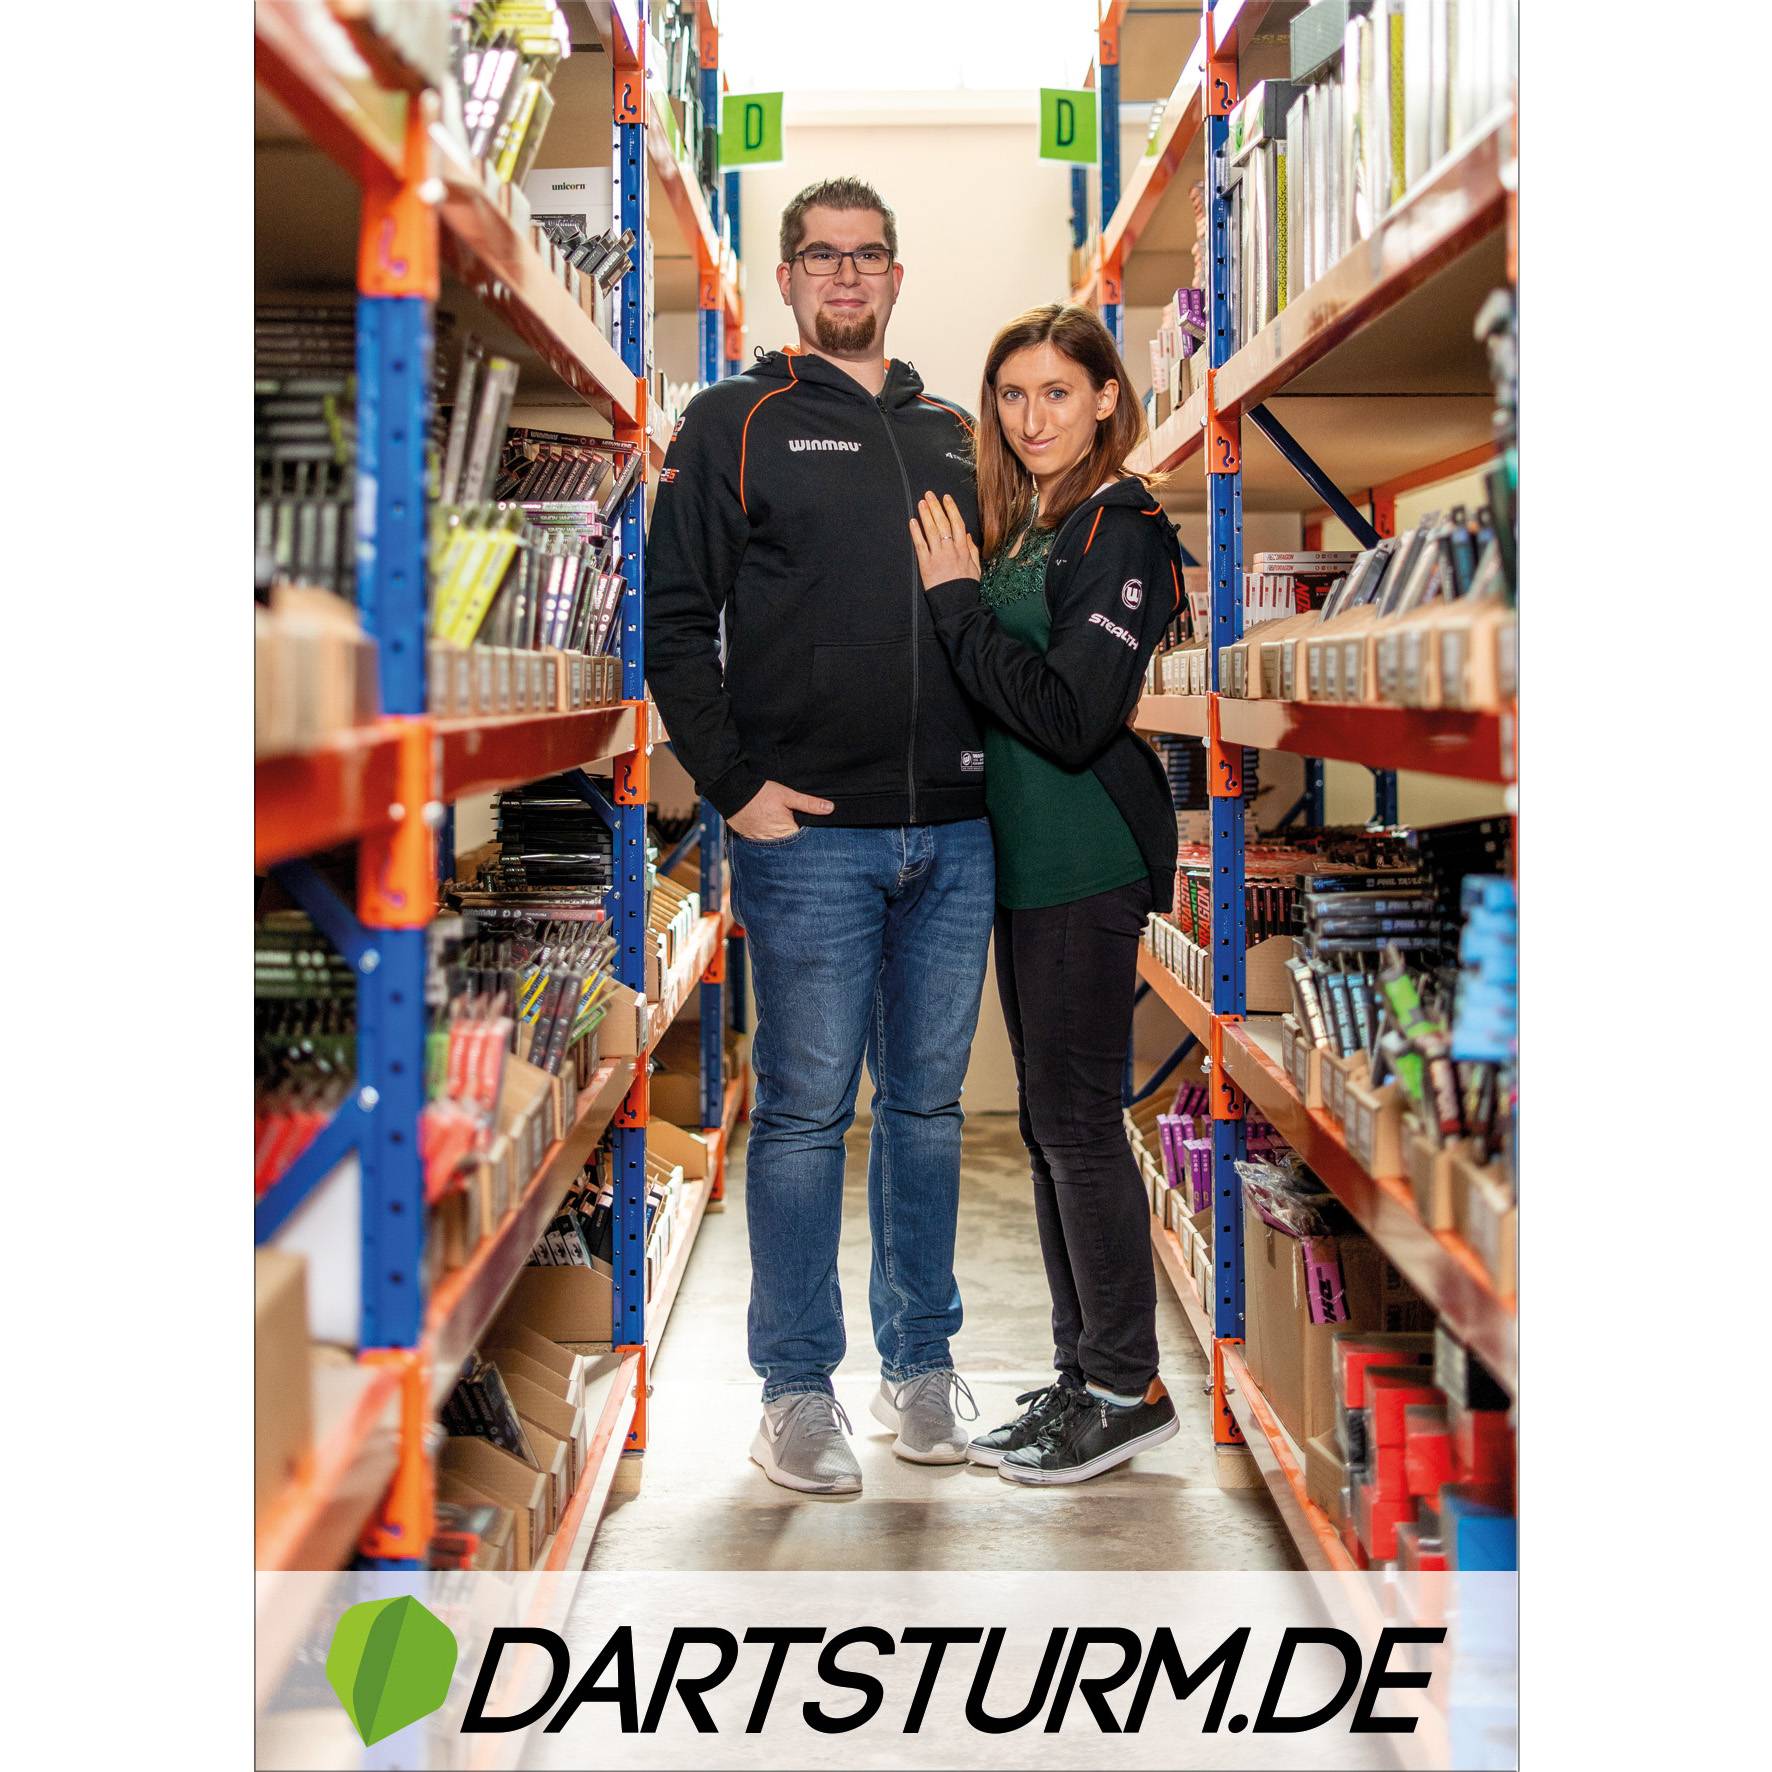 DartSturm.de - Autogrammkarte - DIN A6